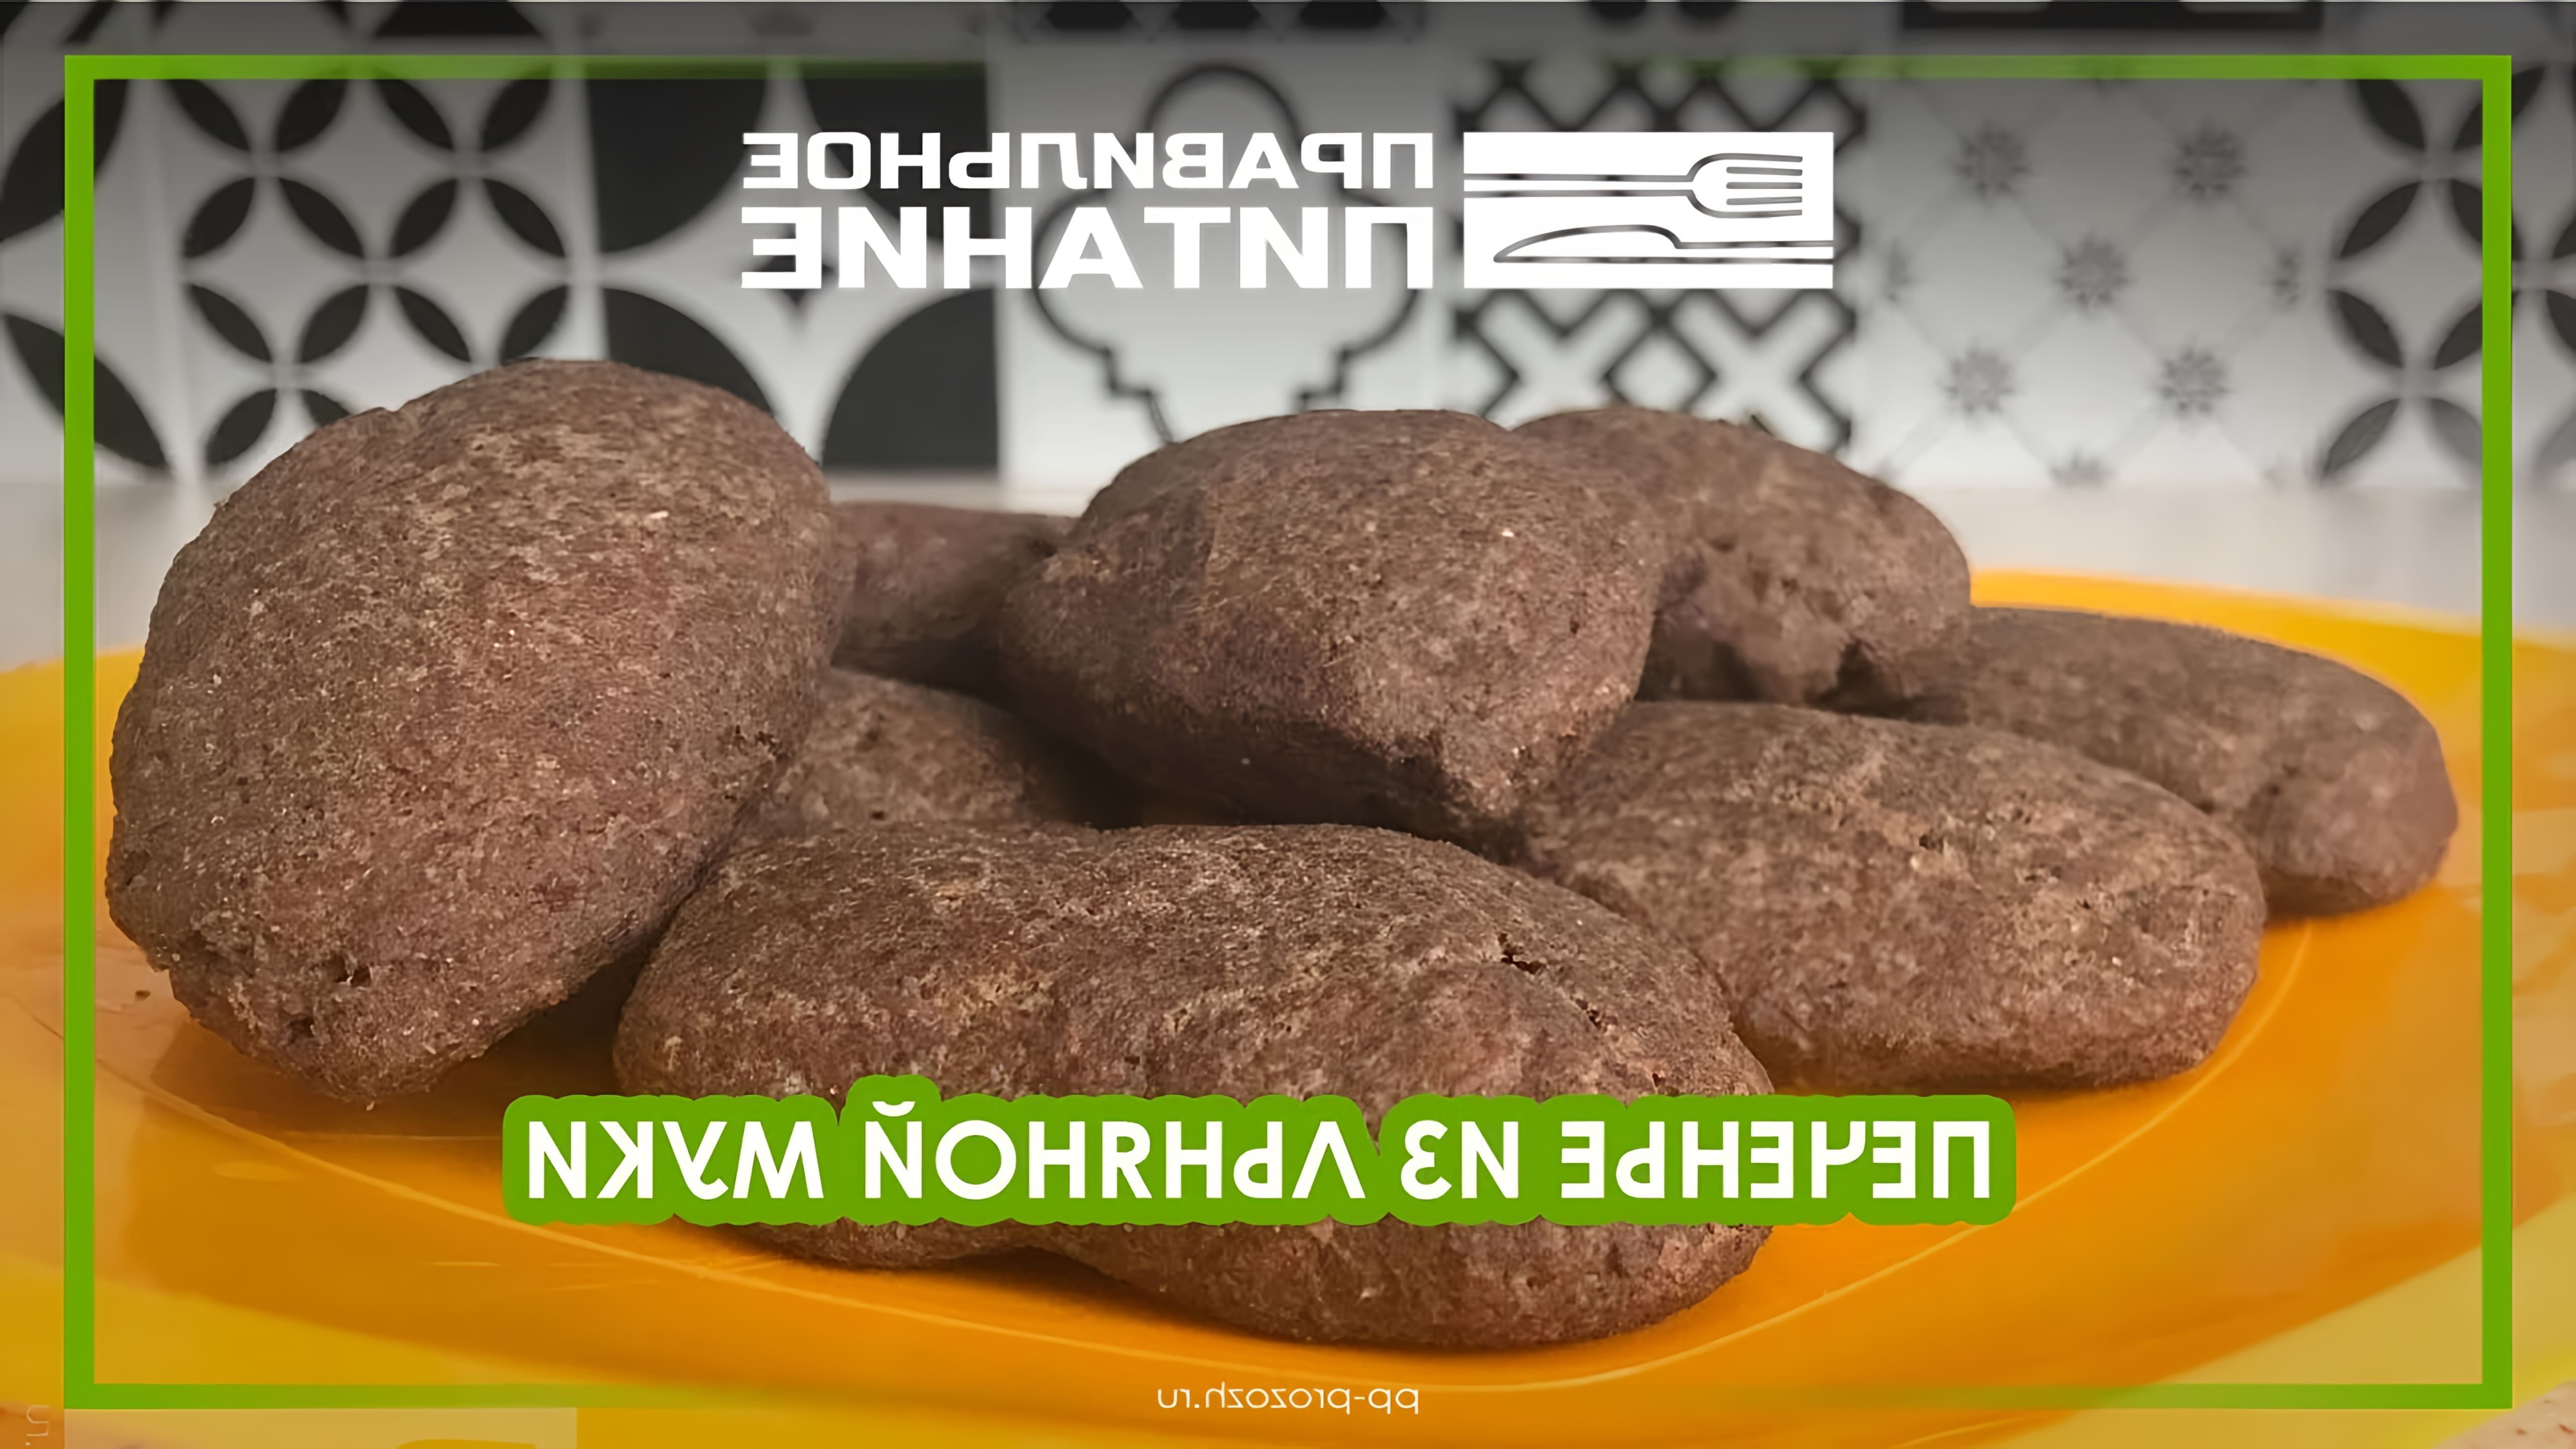 В этом видео демонстрируется рецепт приготовления печенья из льняной муки